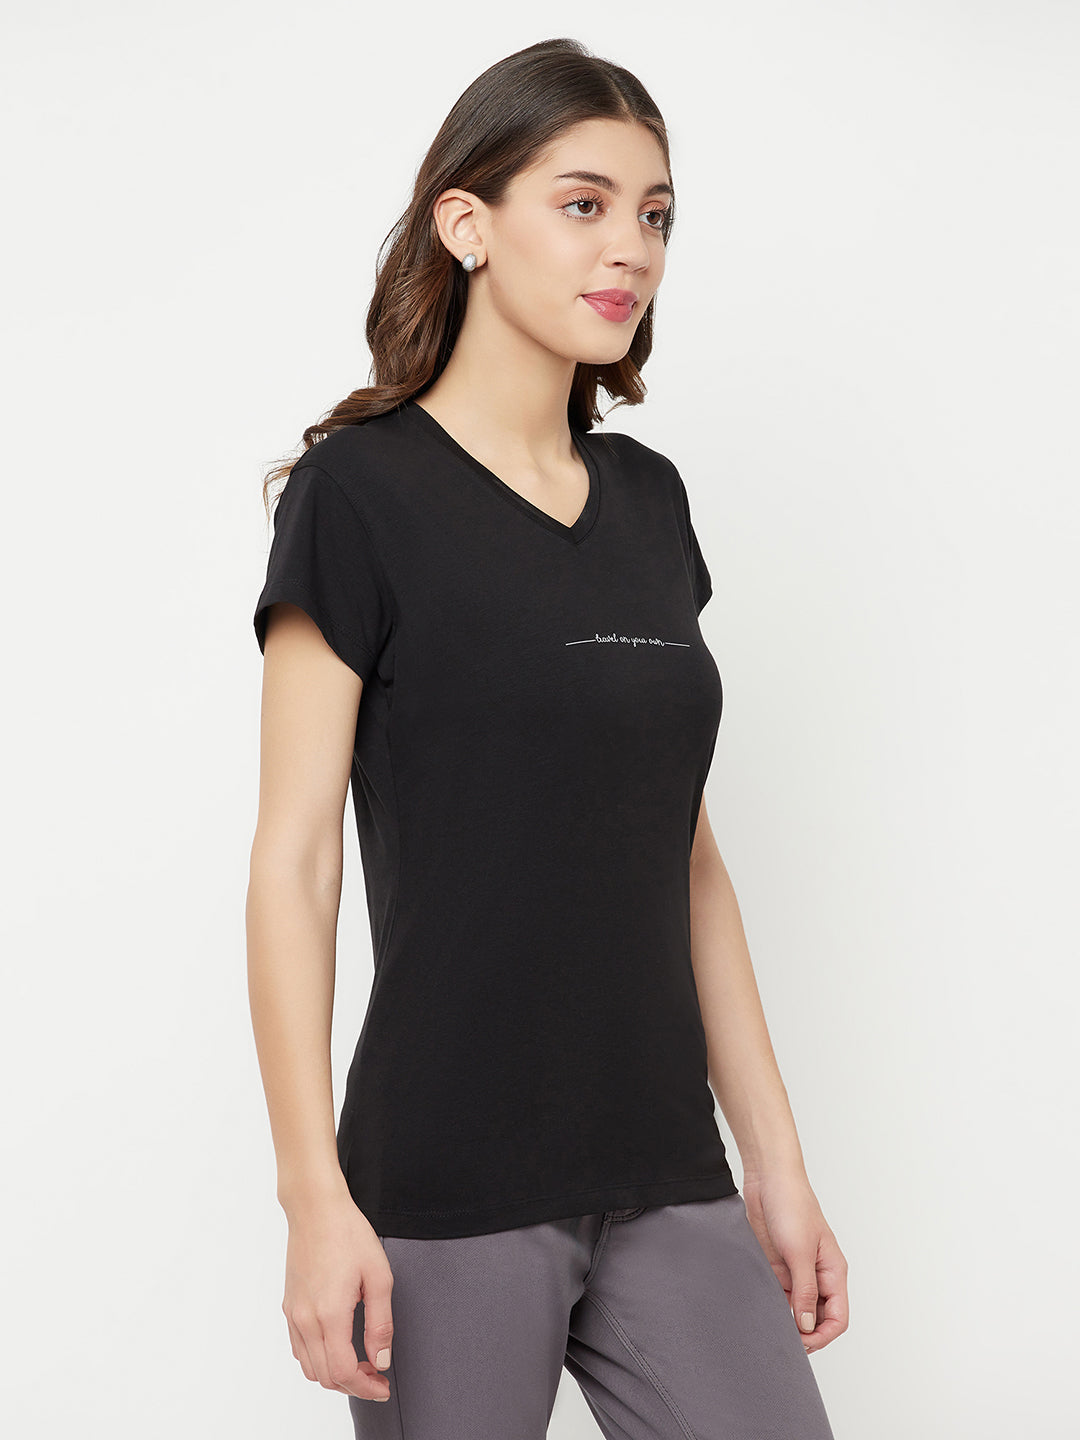 Black Printed V-Neck T-Shirt - Women T-Shirts